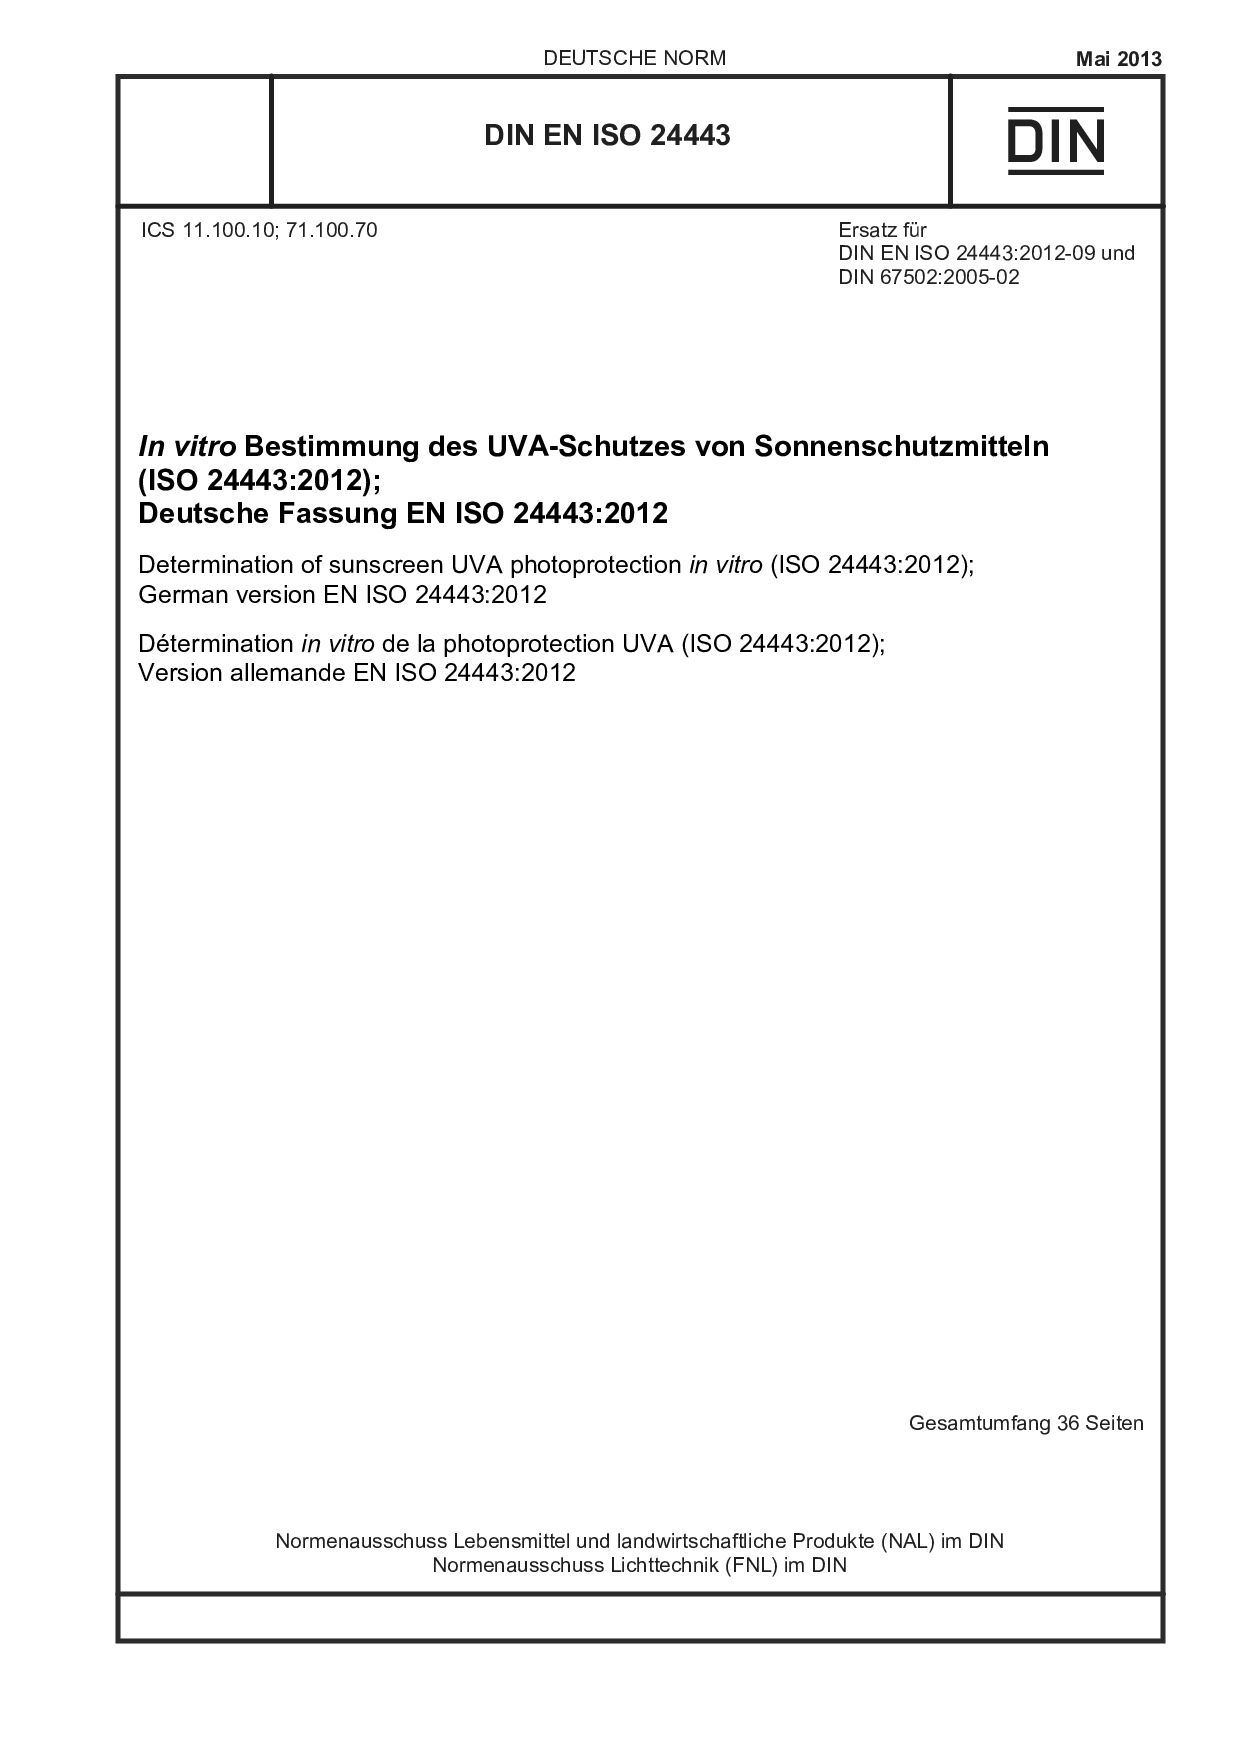 DIN EN ISO 24443:2013封面图